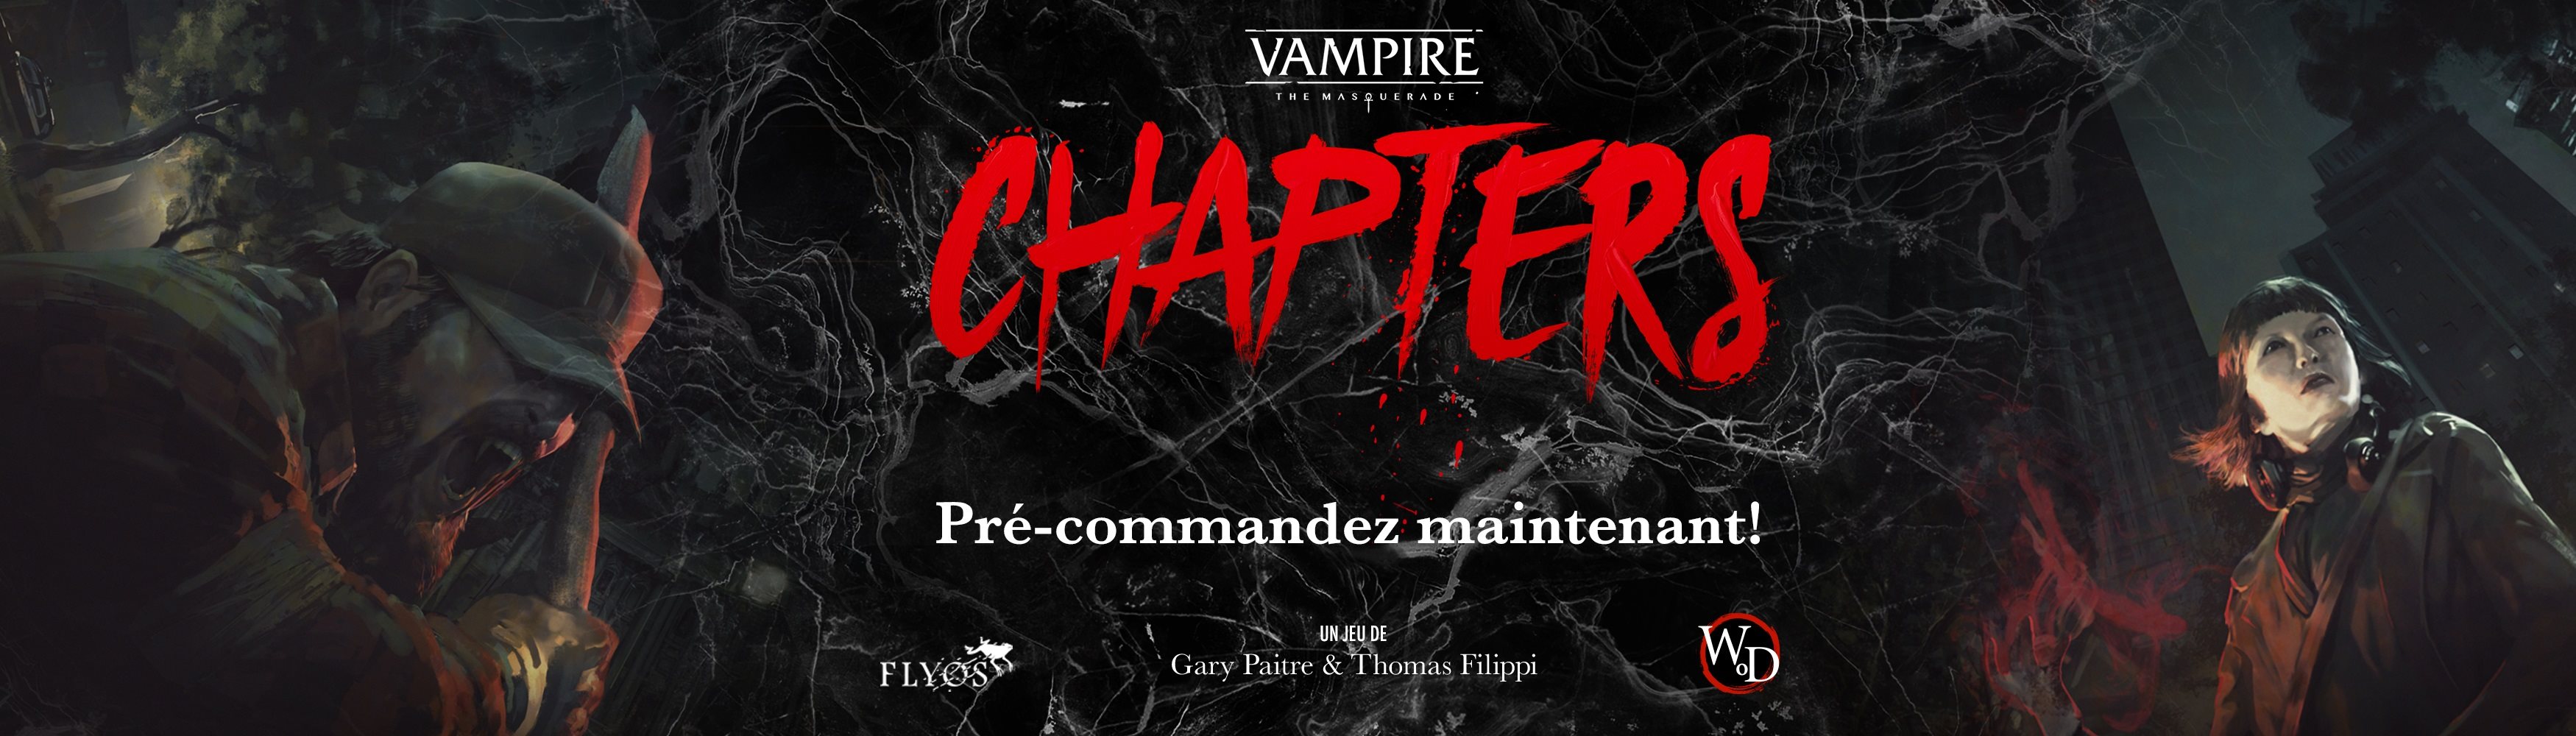 Vampires banner april 2023 FRENCH